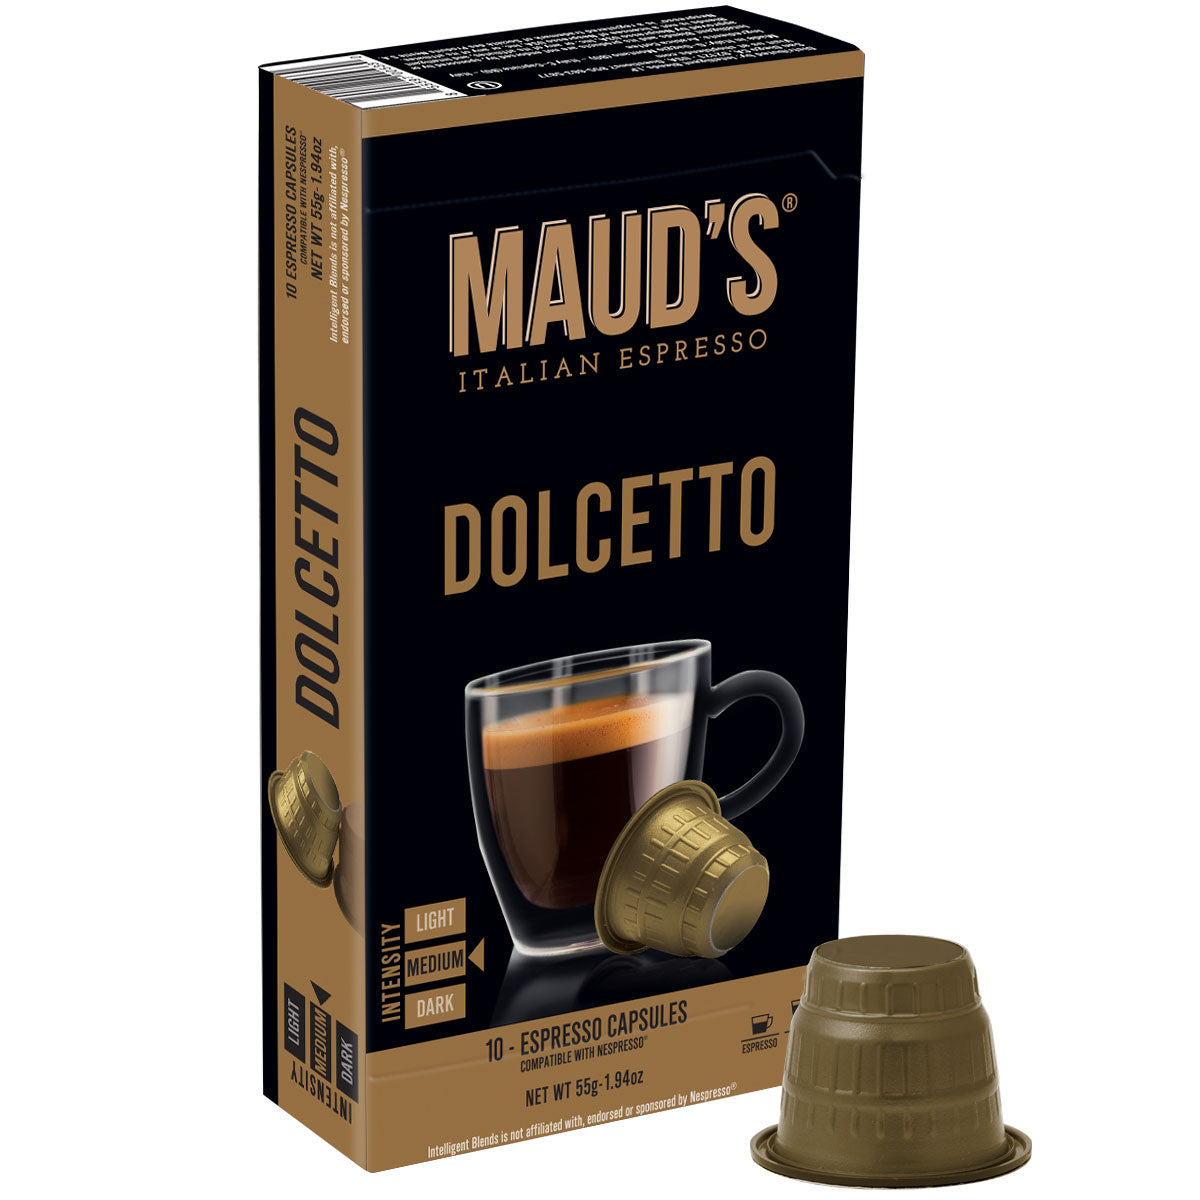 Maud's Dolcetto Italian Espresso Capsules